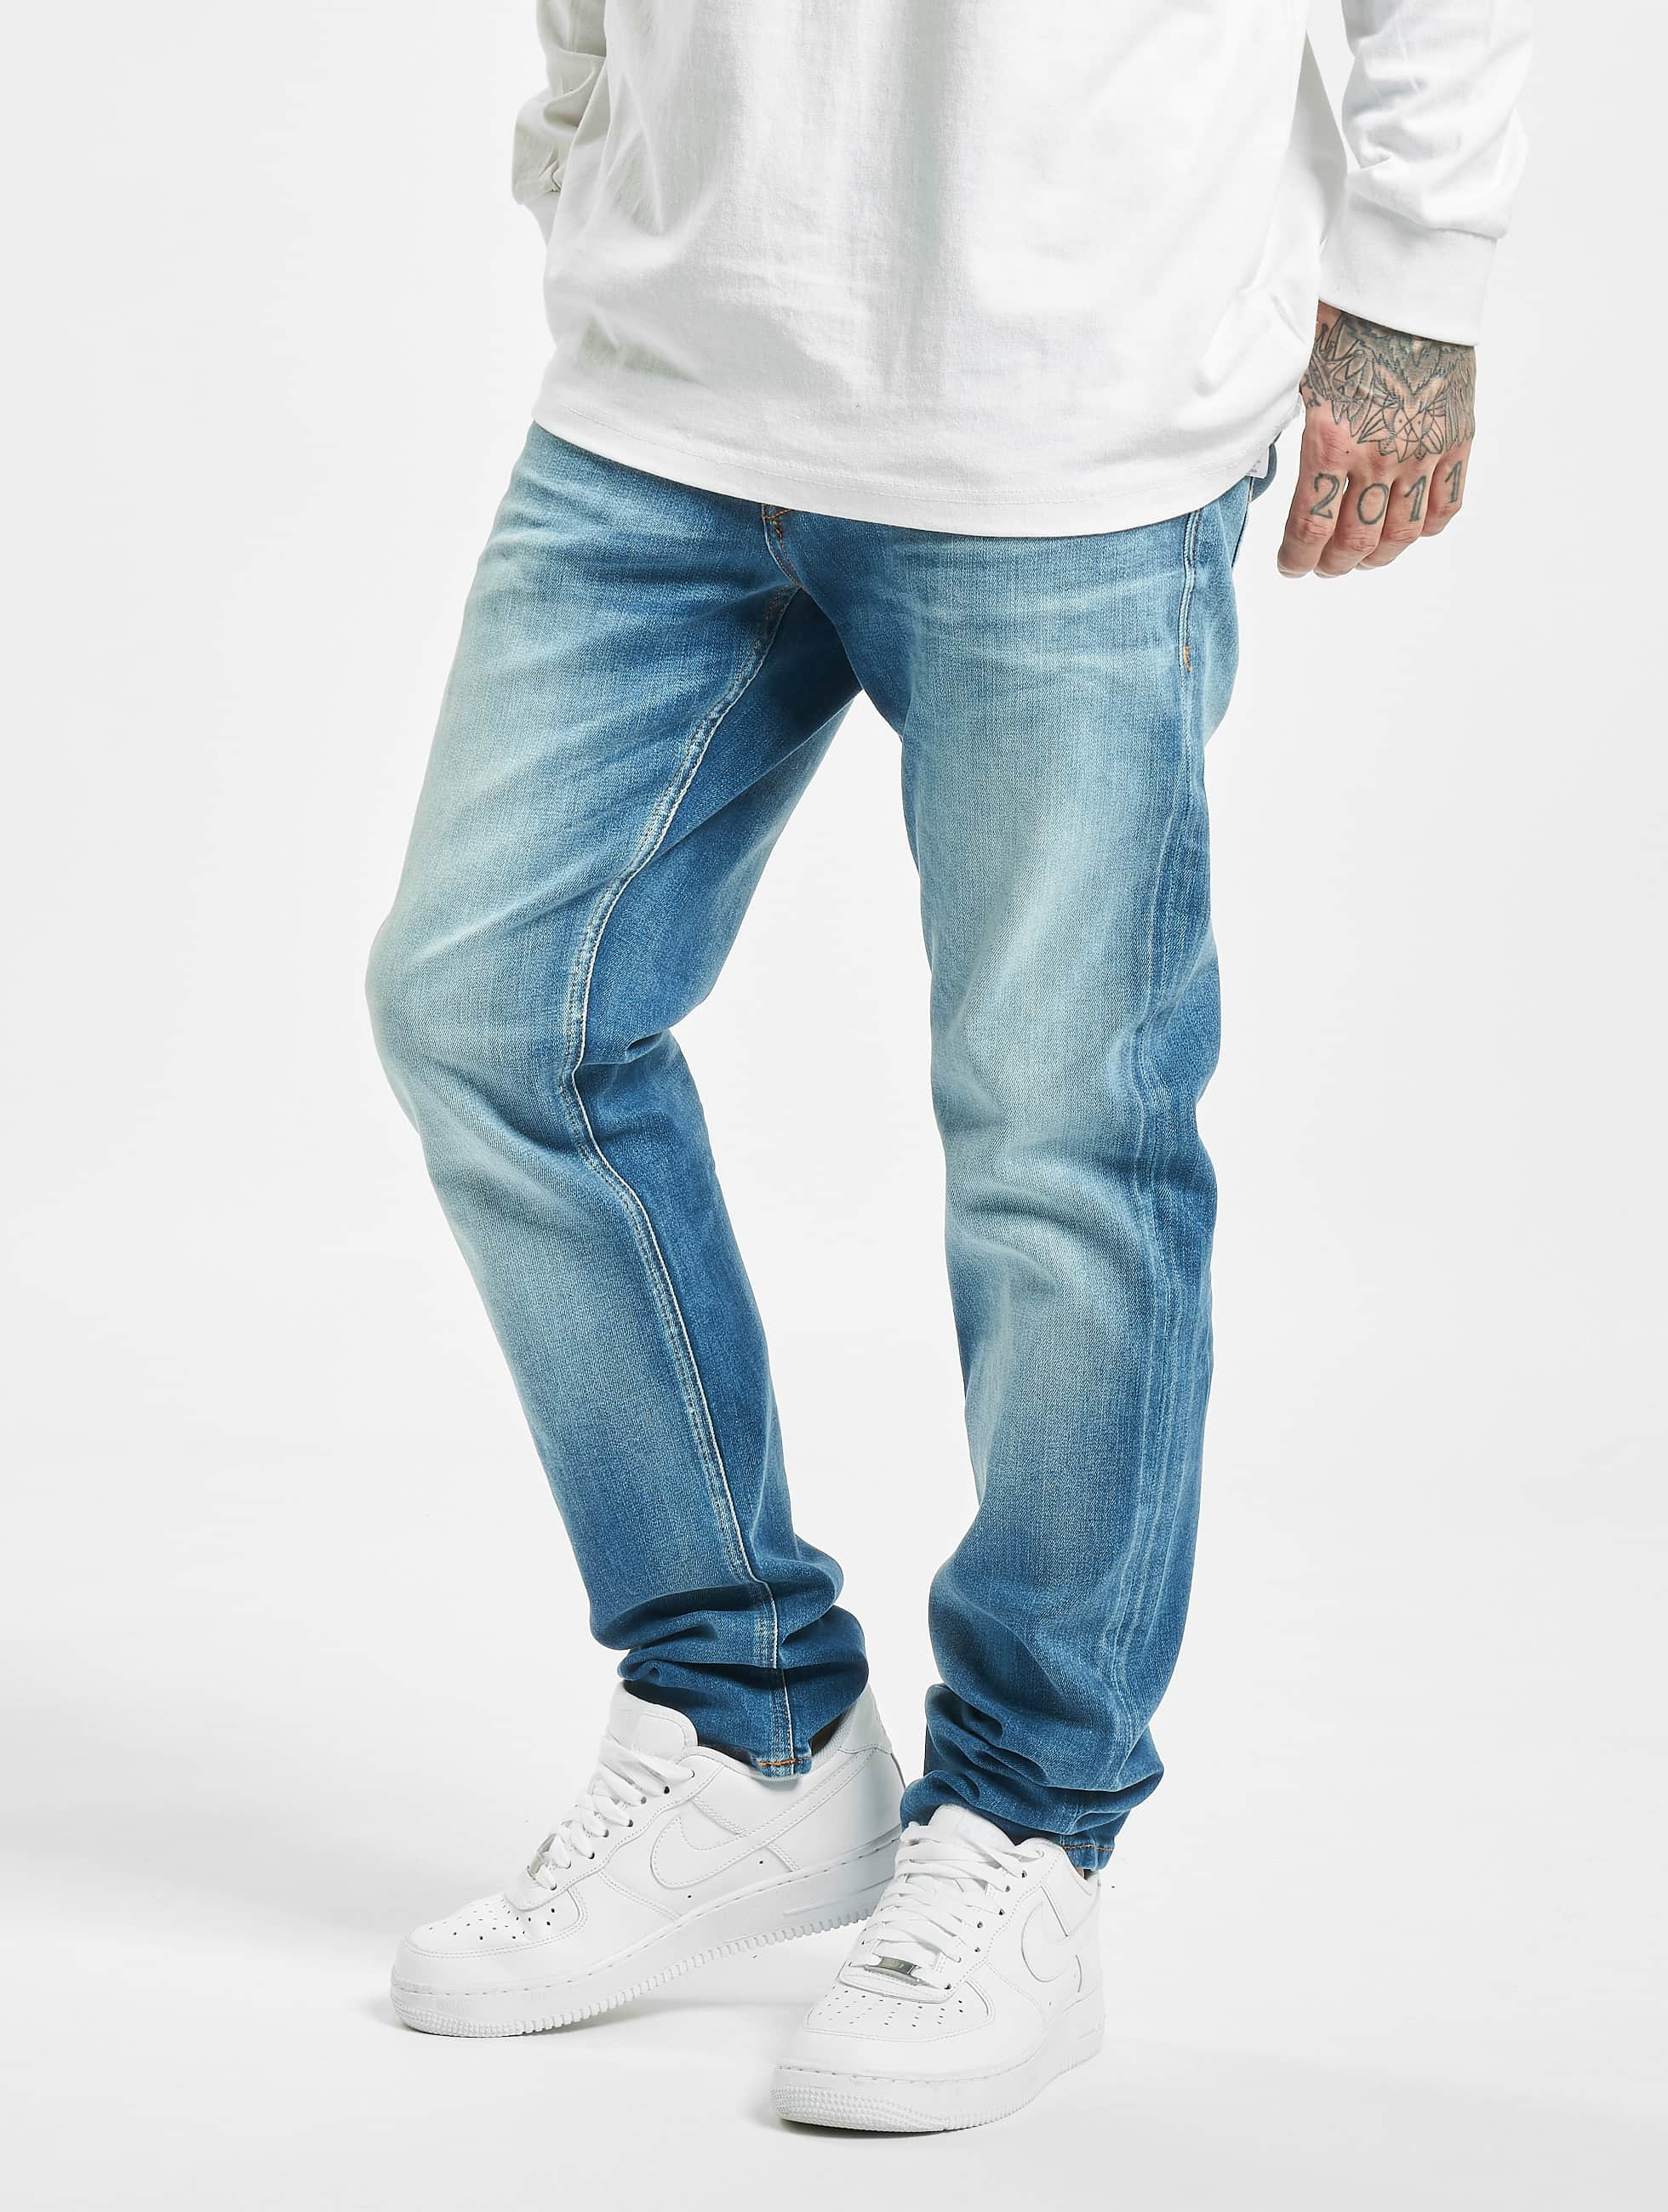 Укороченные джинсы мужские, популярные цвета и комбинации оттенков